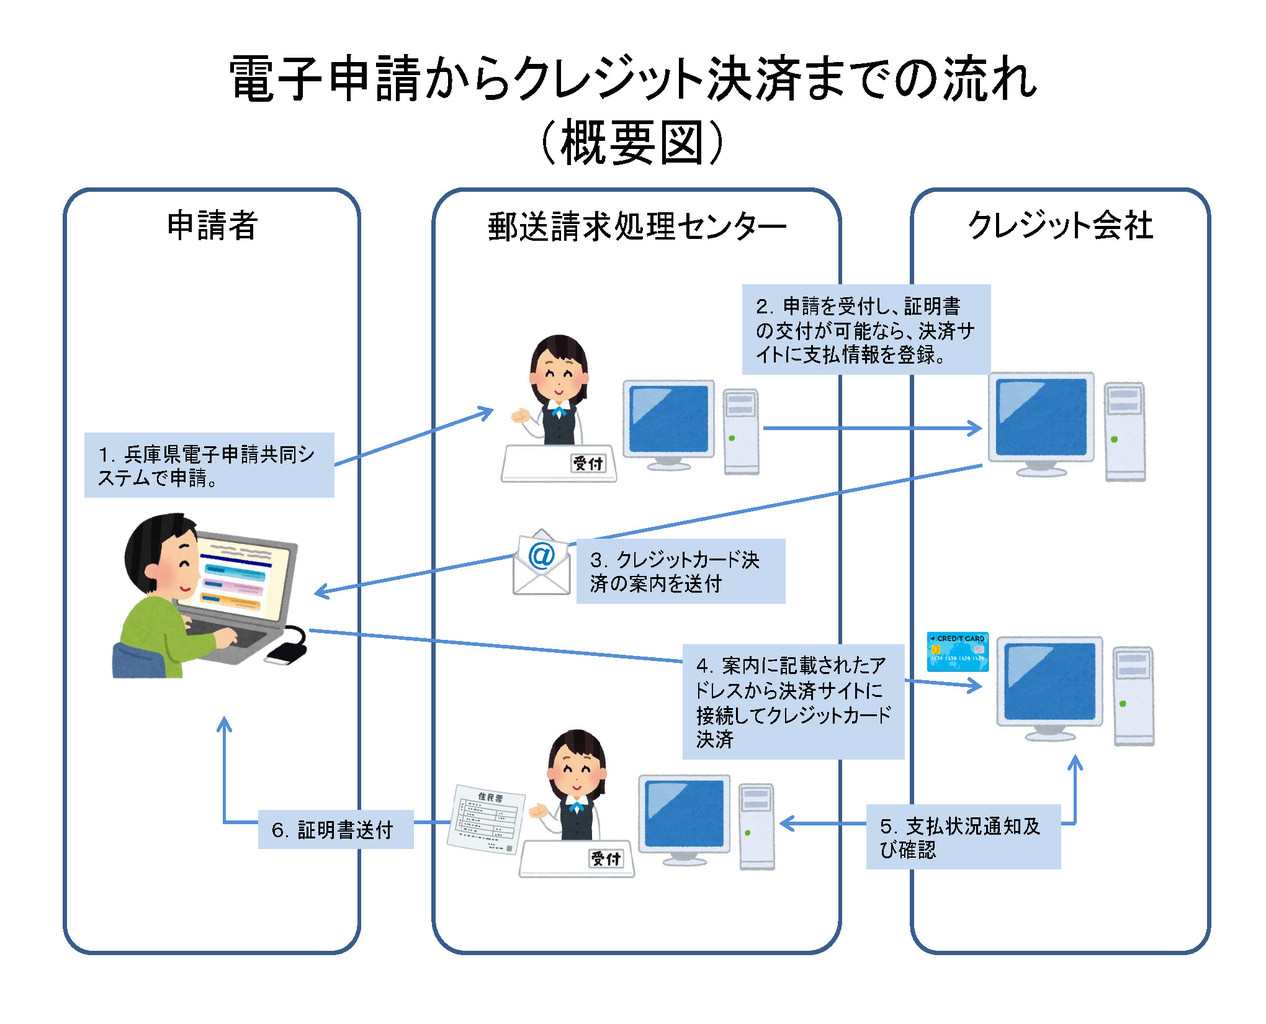 神戸市が 住民票の写し のネット申請を開始するみたい ネットを使って自宅で申請 郵送でゲットできる 神戸ジャーナル